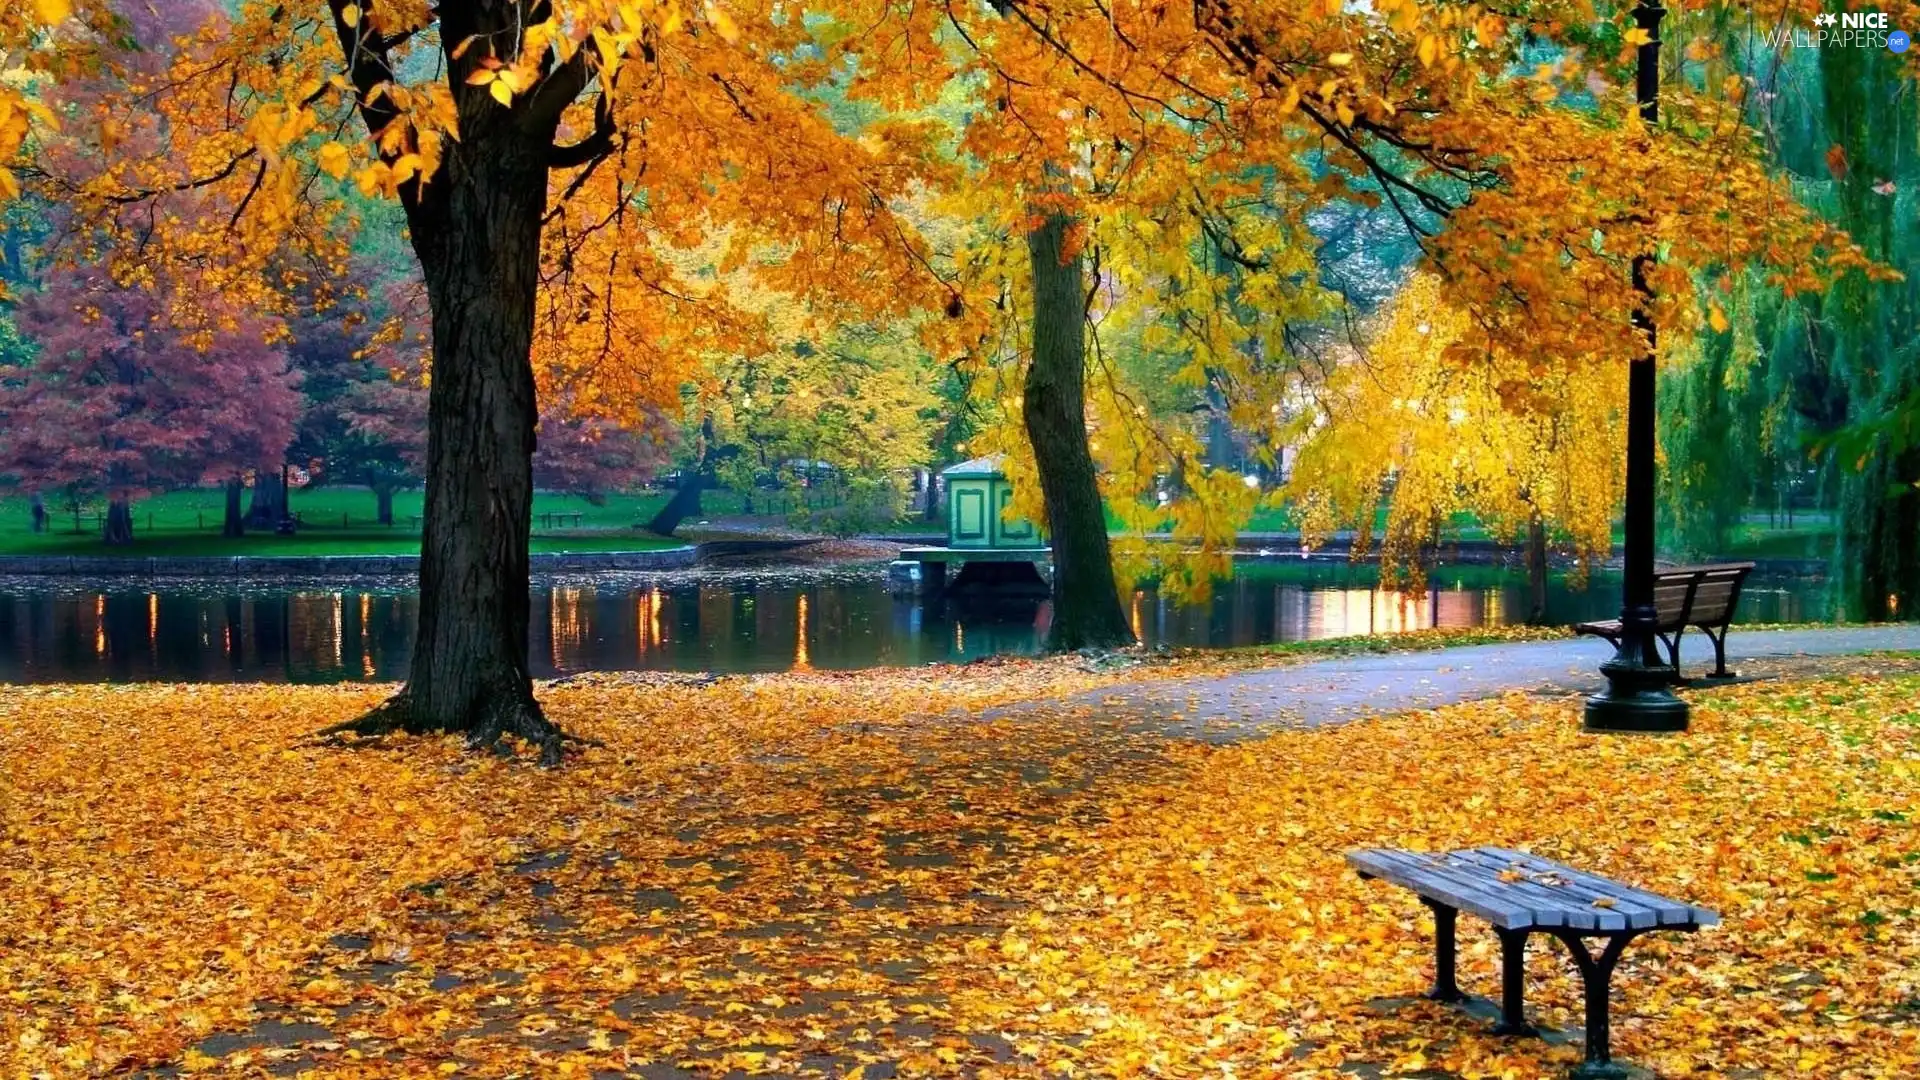 Park, Bench, autumn, River